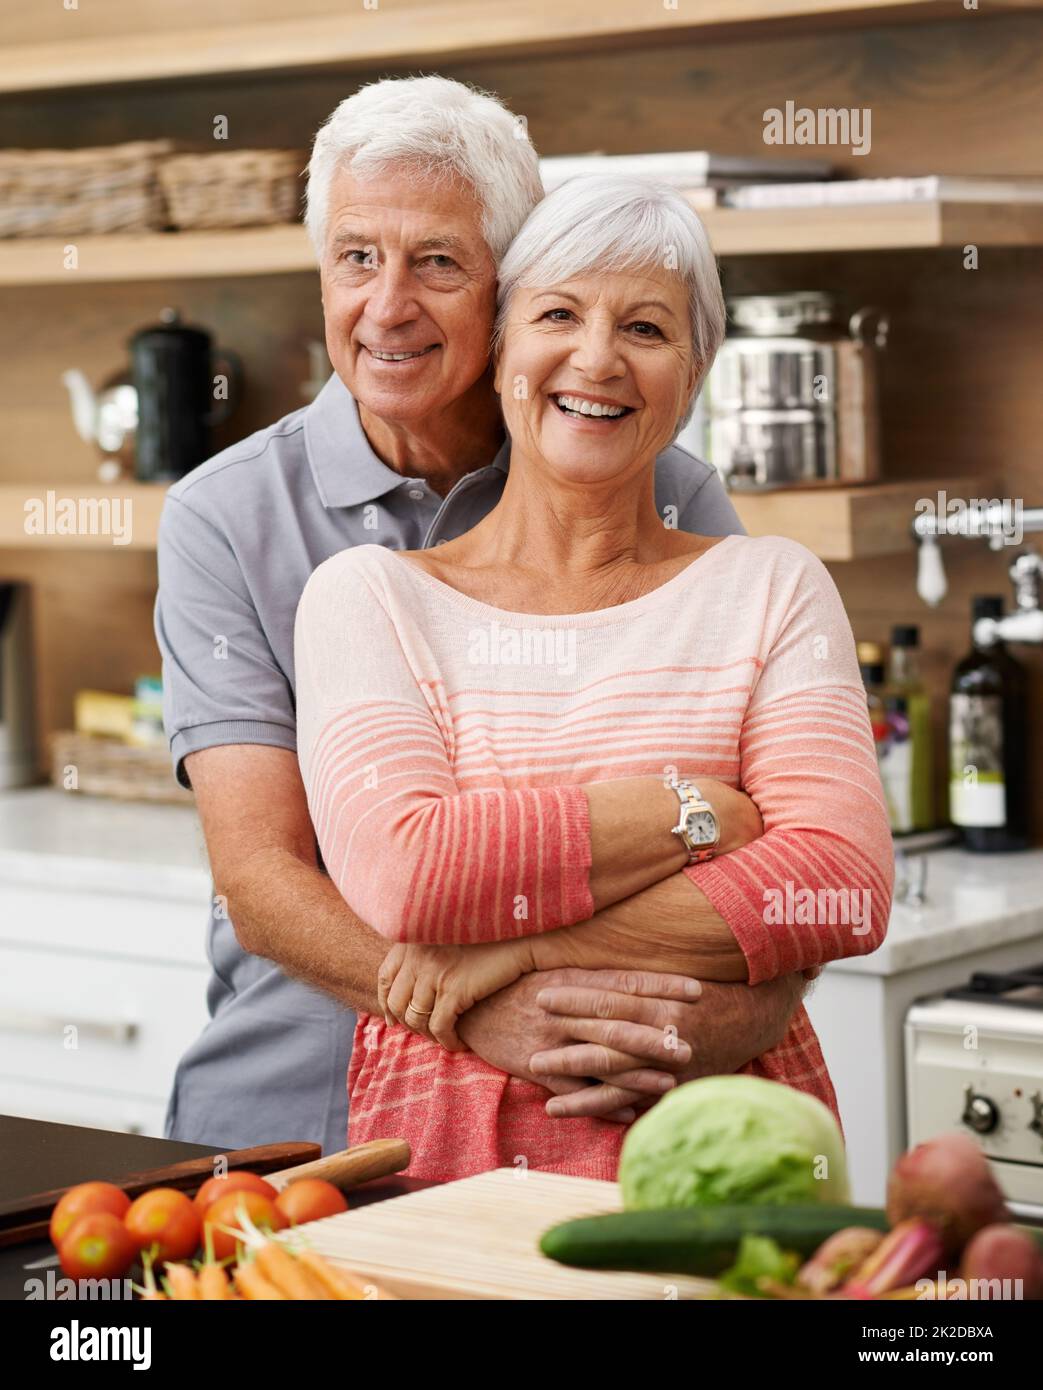 ID tut alles für sie, lernt sogar zu kochen. Aufnahme eines attraktiven Seniorenpaares, das liebevoll in einer Küche posiert. Stockfoto